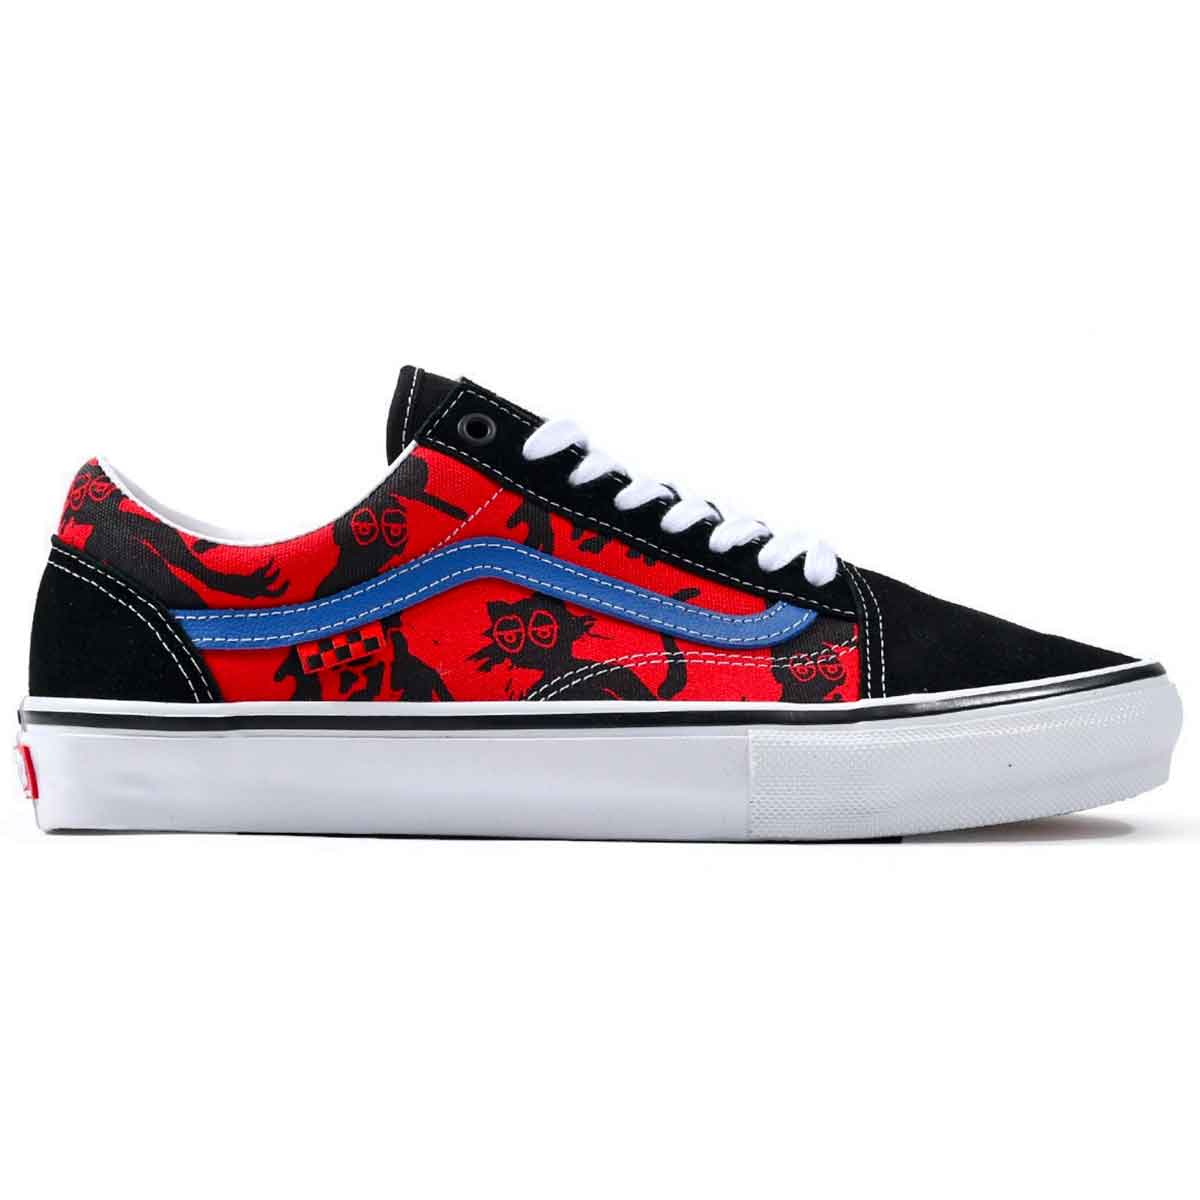 Vans Skate Krooked By Natas Old Skool Pro Shoes - Black/Red | SoCal ...